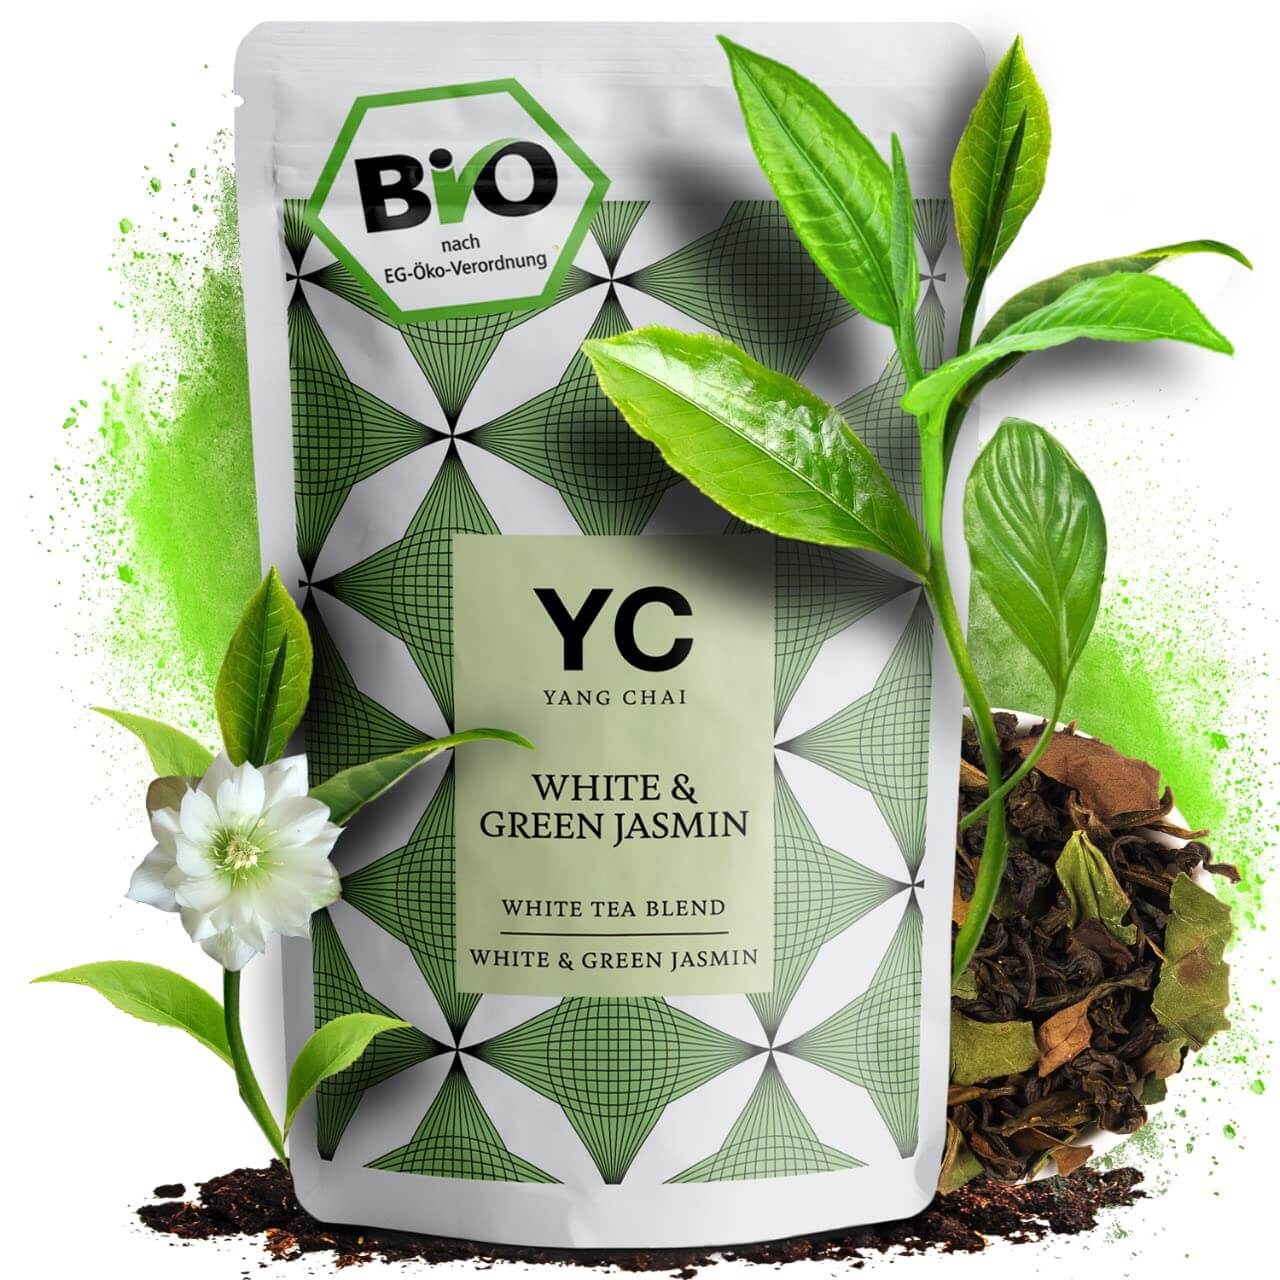 Grüner Tee Premium Bio lose Blätter Grüntee "White & Green Jasmin" von Yang Chai